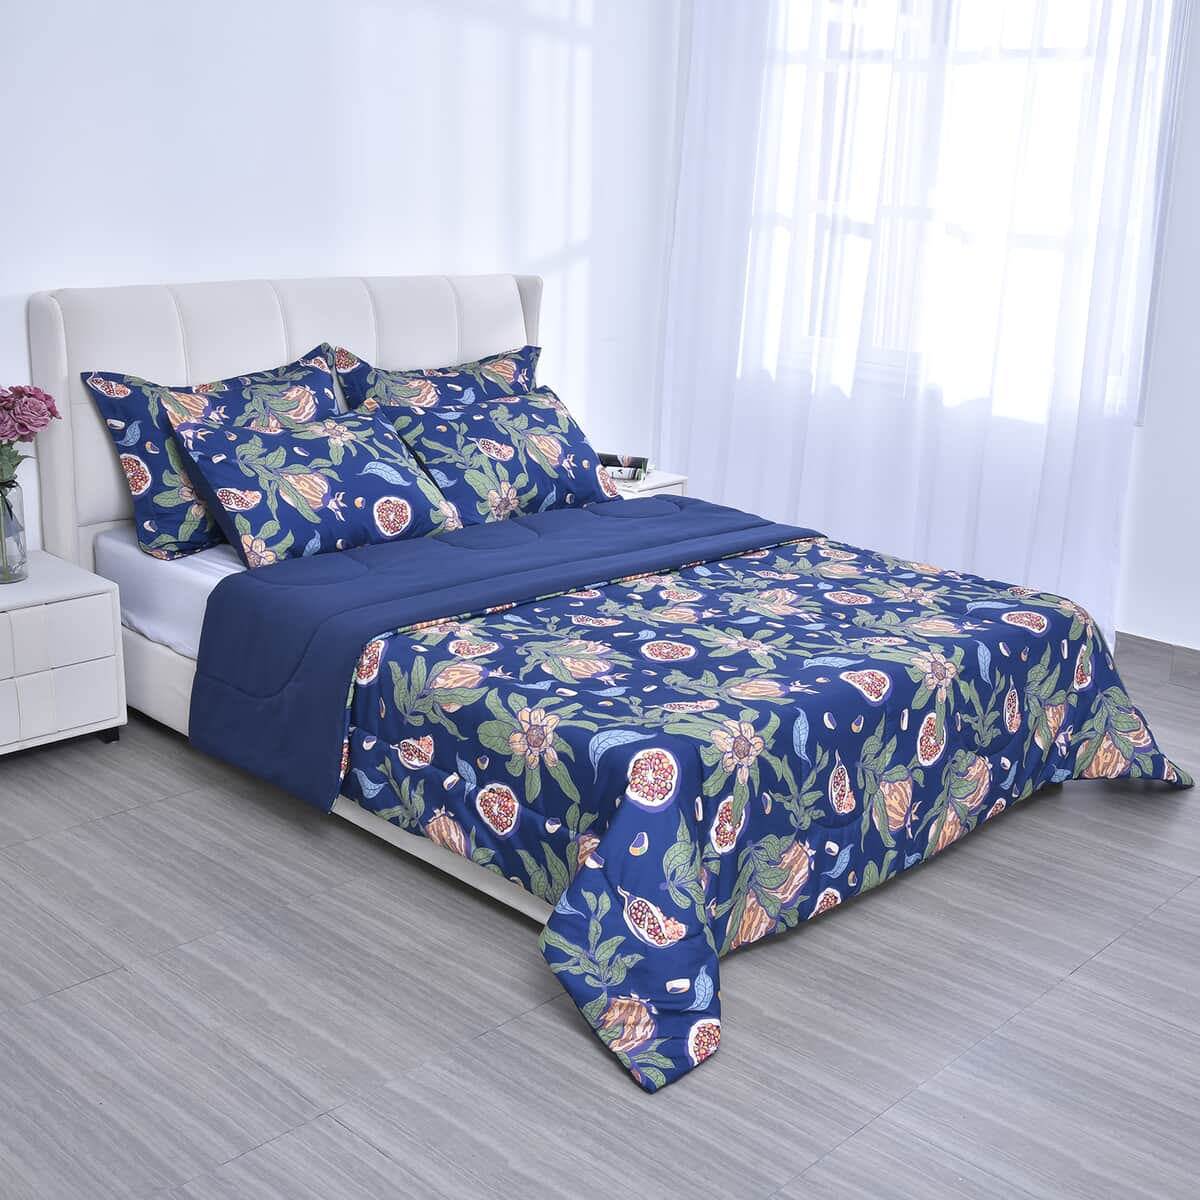 HOMESMART Blue Digital Floral Printed Microfiber 5pcs Comforter Set - Queen image number 0